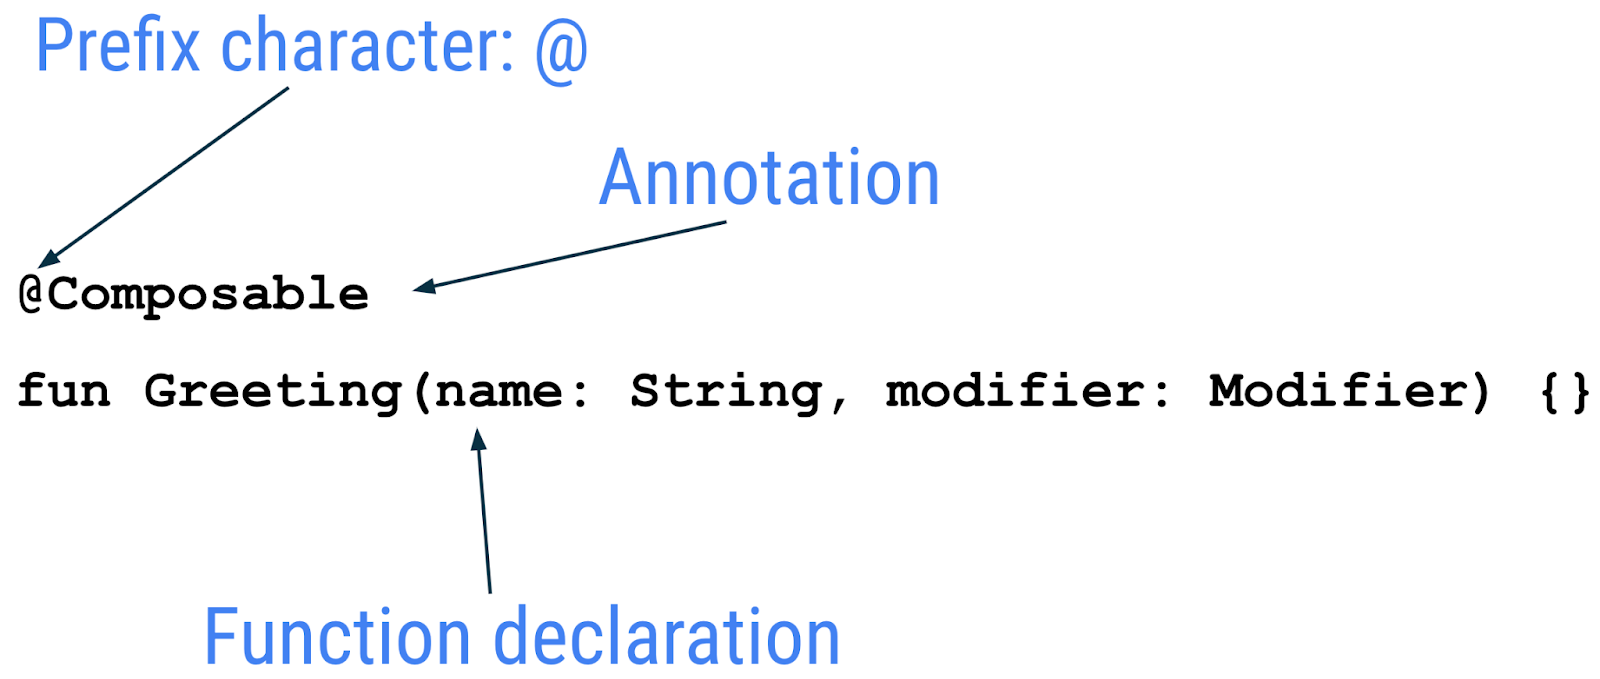 Diagramme illustrant l'anatomie d'une fonction composable où le préfixe est @ et l'annotation est "composable", suivie de la déclaration de la fonction.